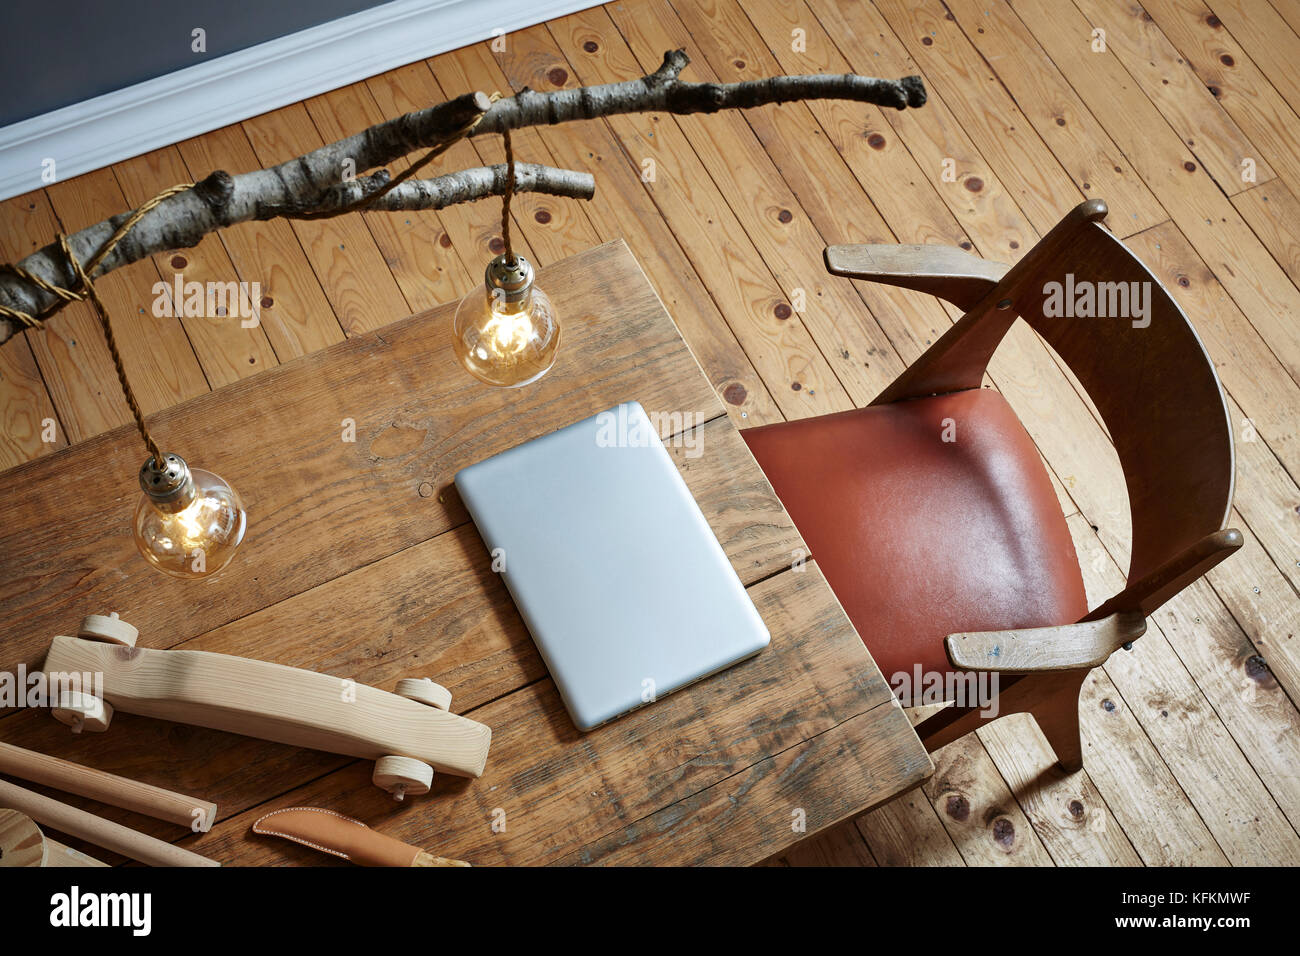 Creative e bella area di lavoro portatile e intaglio del legno Foto Stock